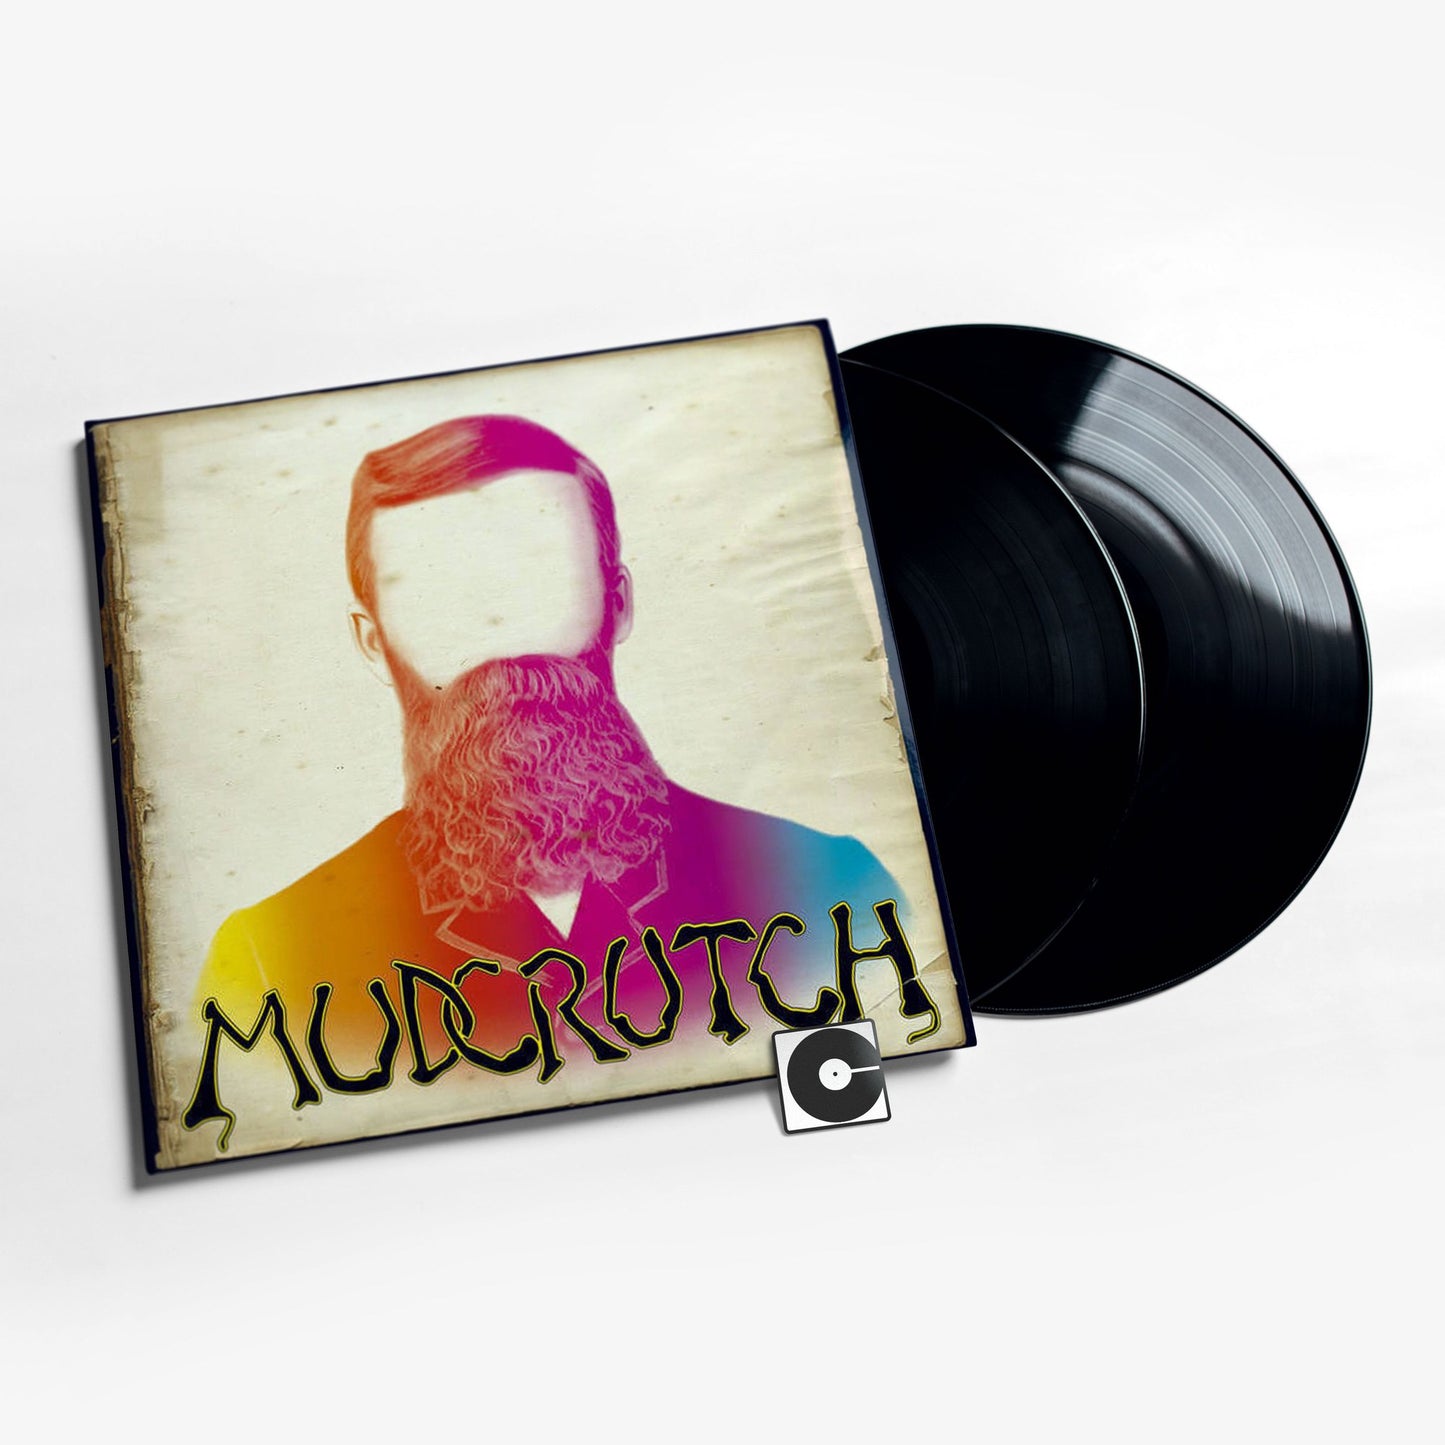 Mudcrutch - "Mudcrutch"